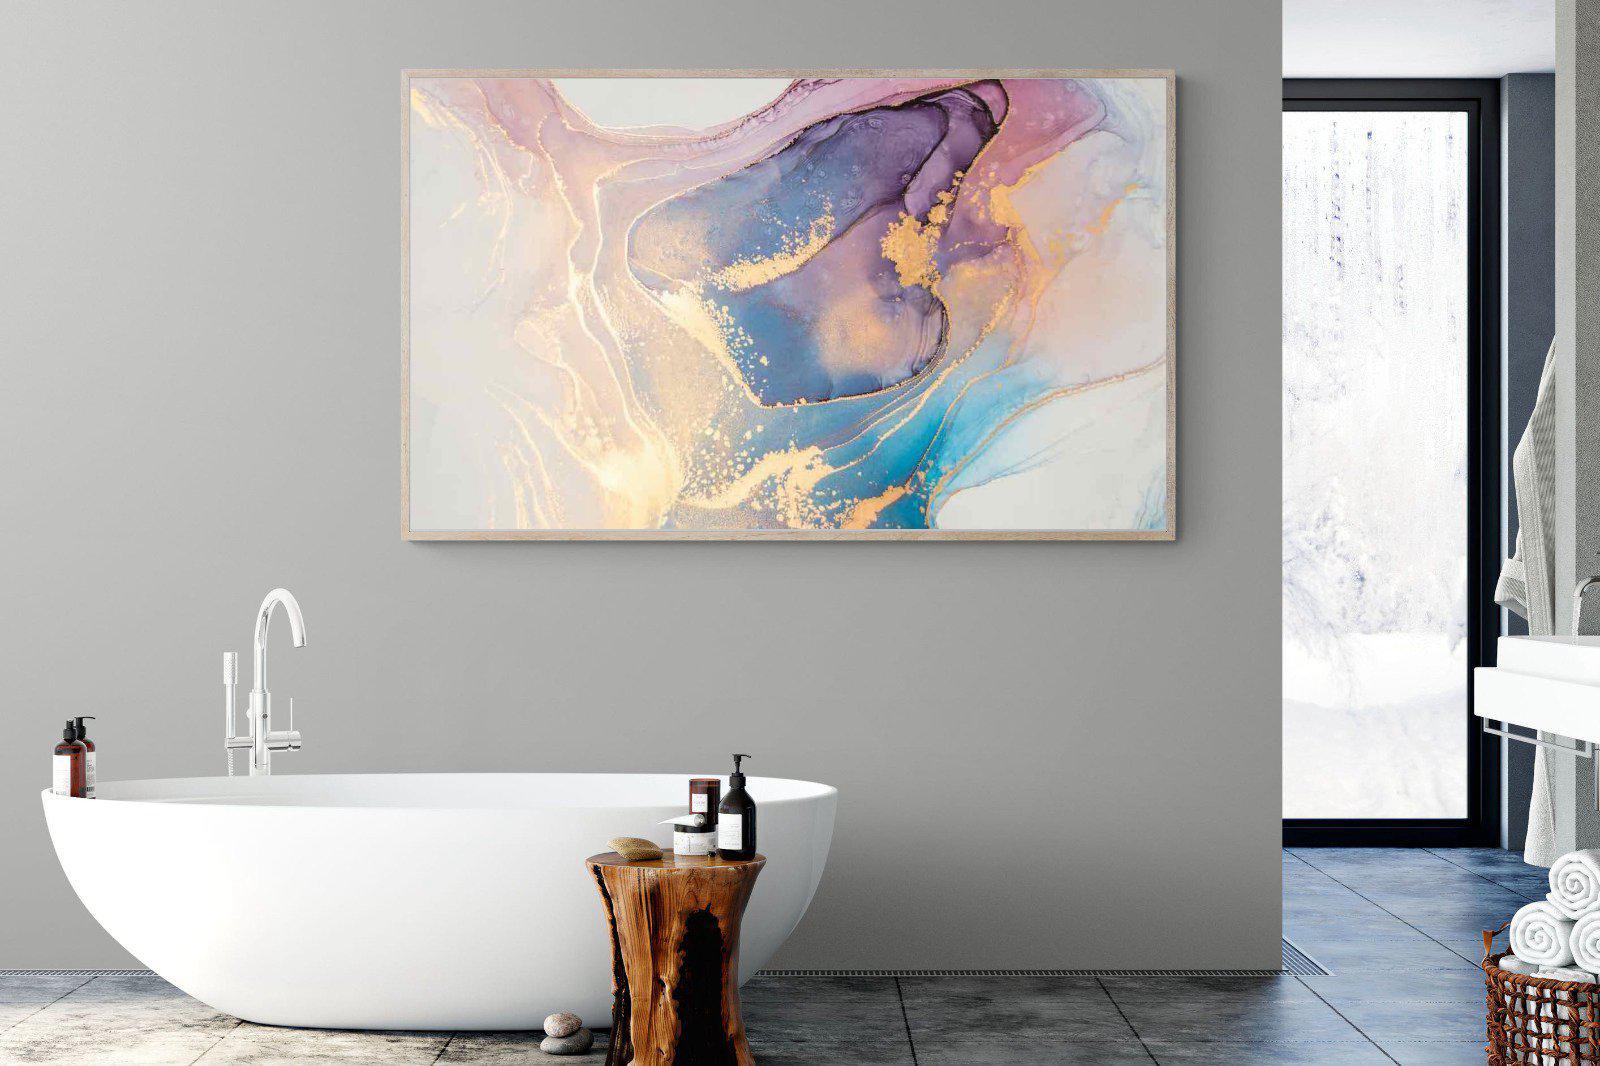 Blushing-Wall_Art-180 x 110cm-Mounted Canvas-Wood-Pixalot